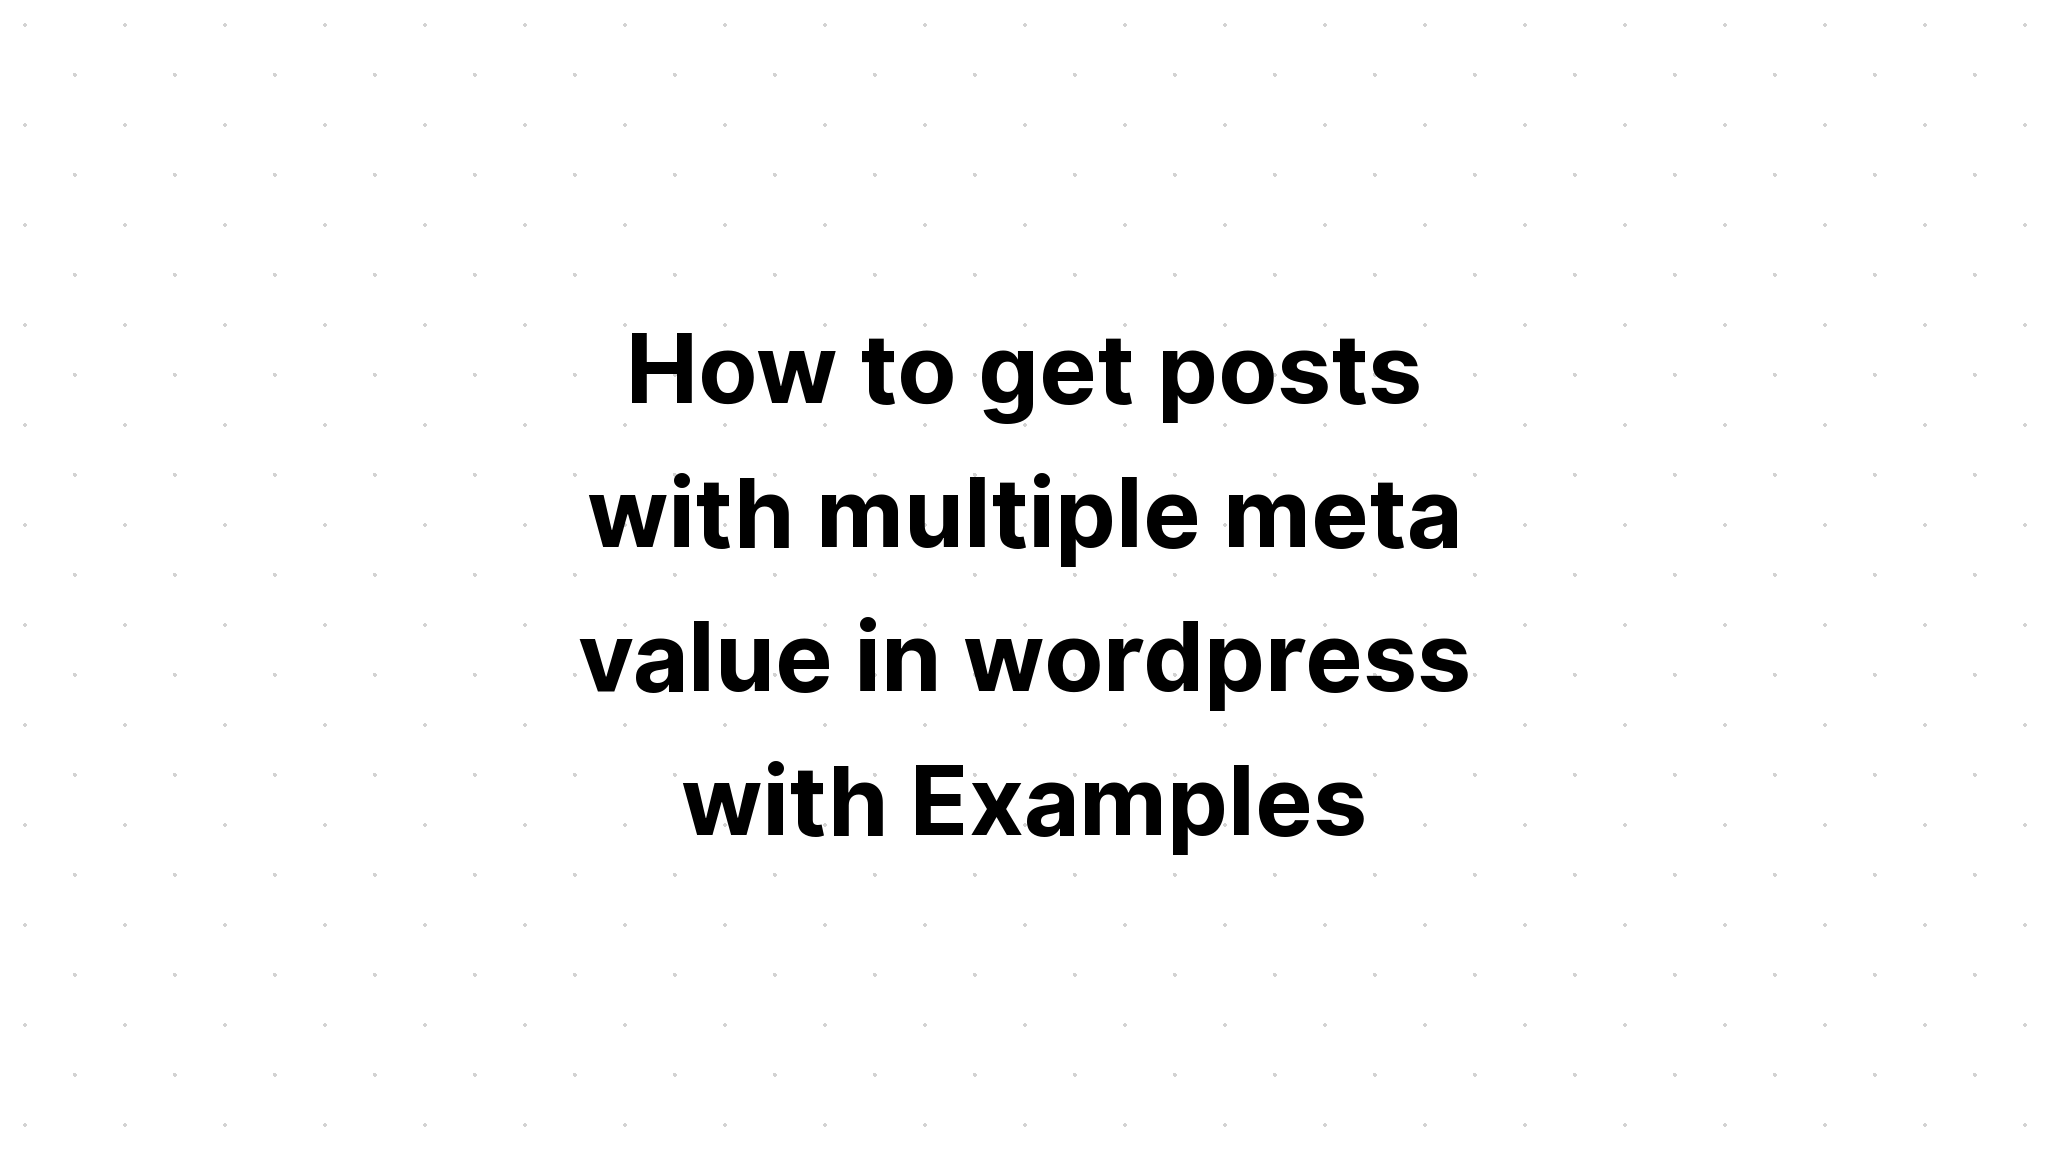 Cách nhận bài đăng có nhiều giá trị meta trong wordpress với Ví dụ